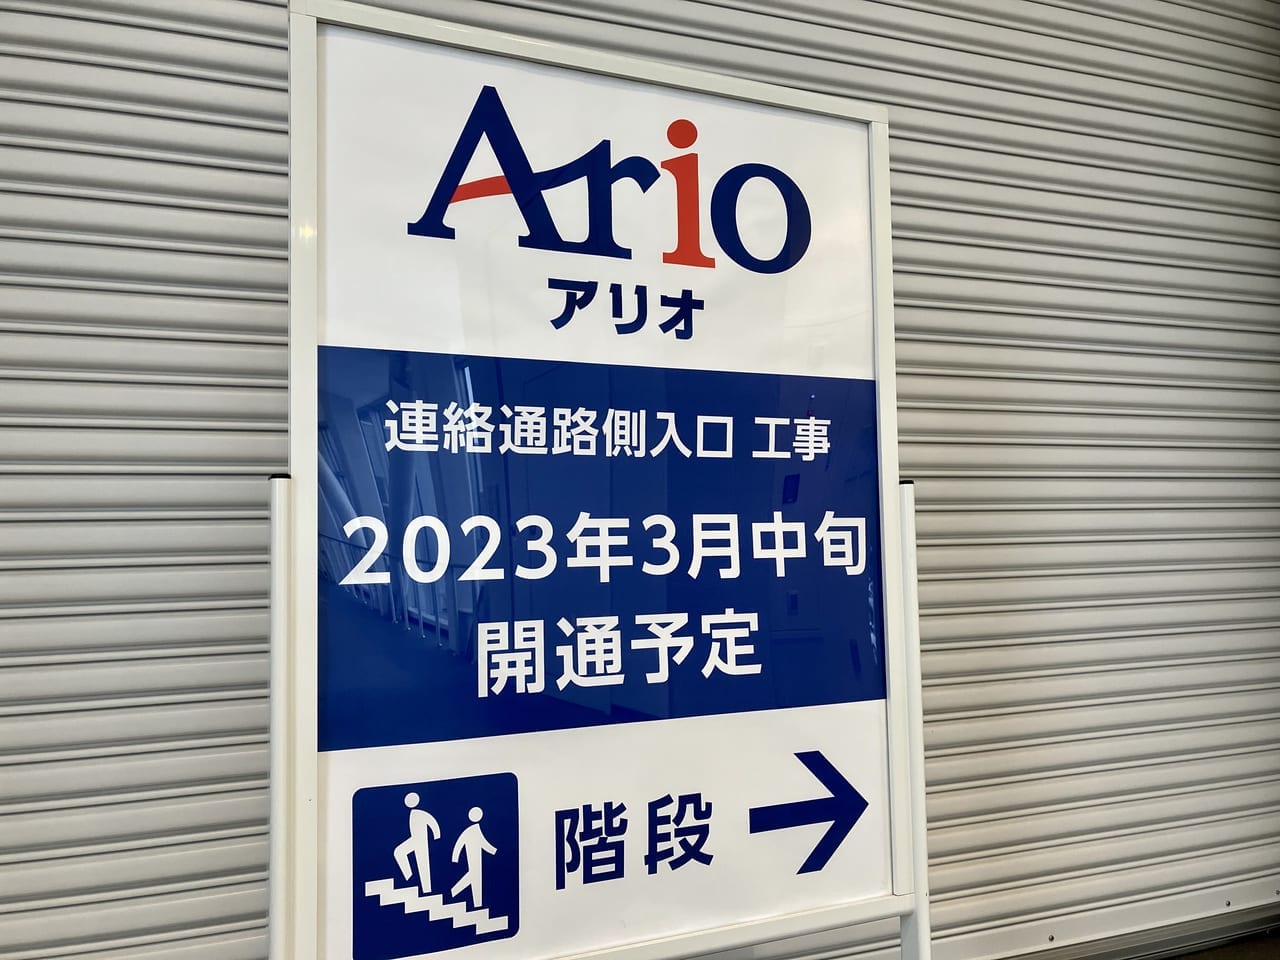 嬉しいっ！待望の開通告知。「アリオ札幌」に続く空中歩廊が開通予定ですよ。